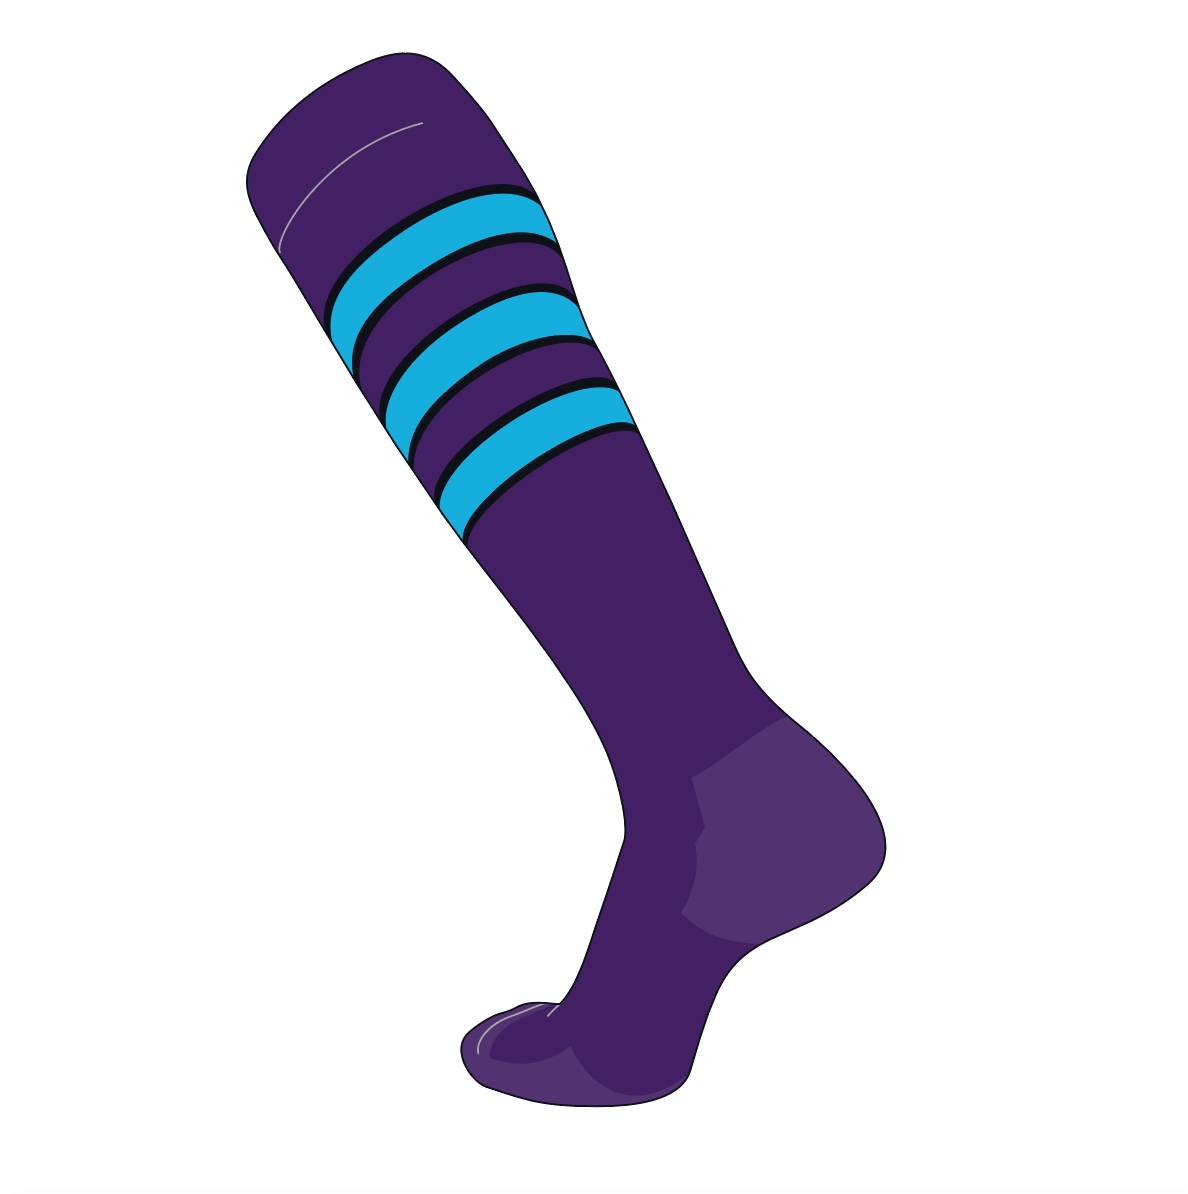 purple knee high athletic socks